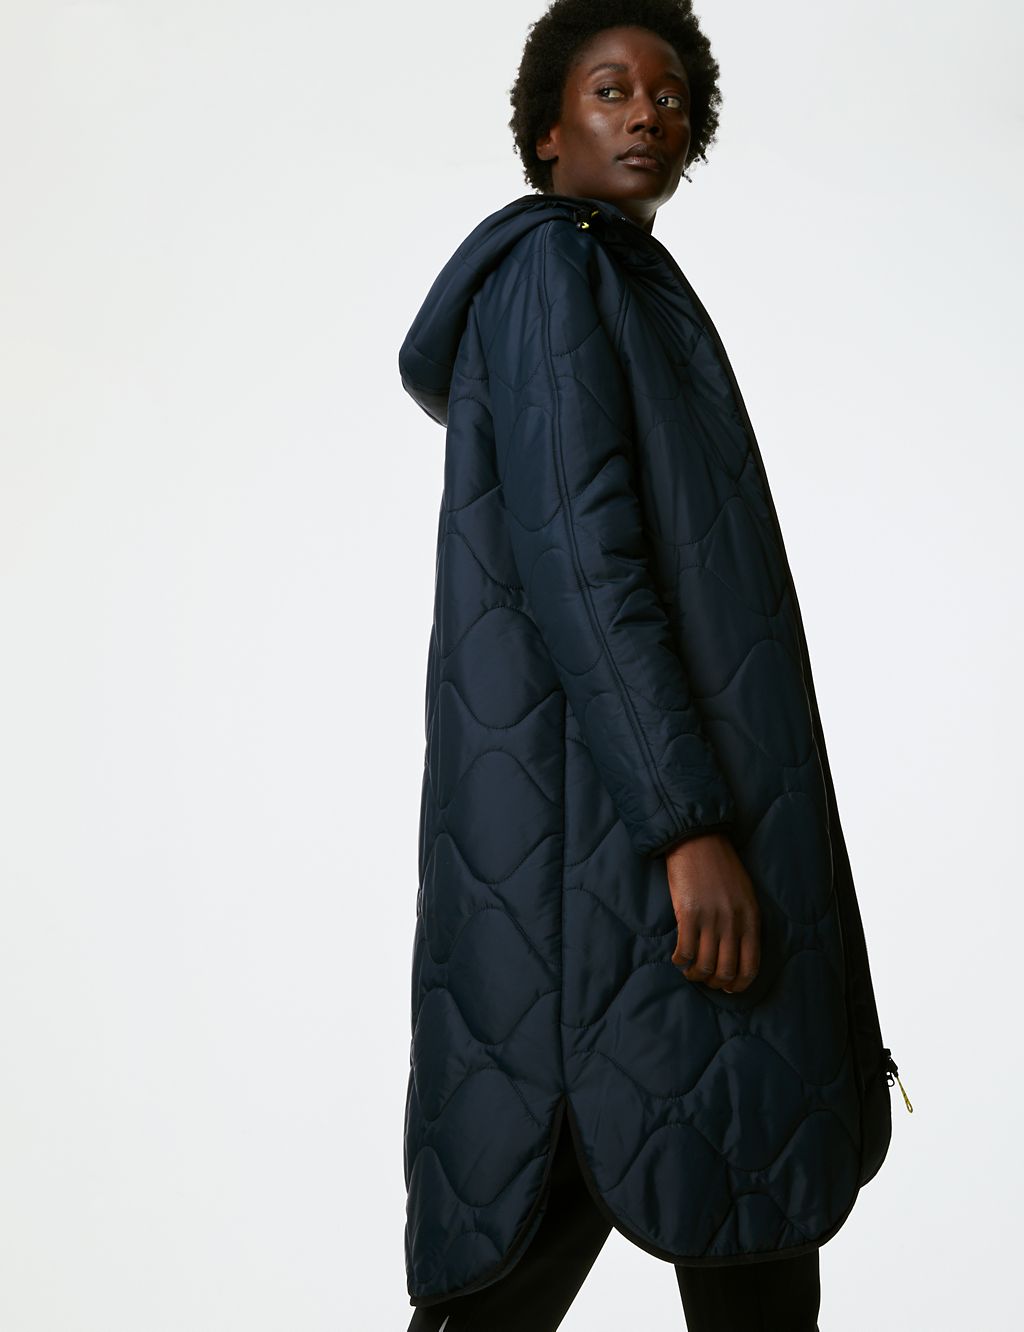 Stormwear™ Fleece Lined Longline Parka | Goodmove | M&S